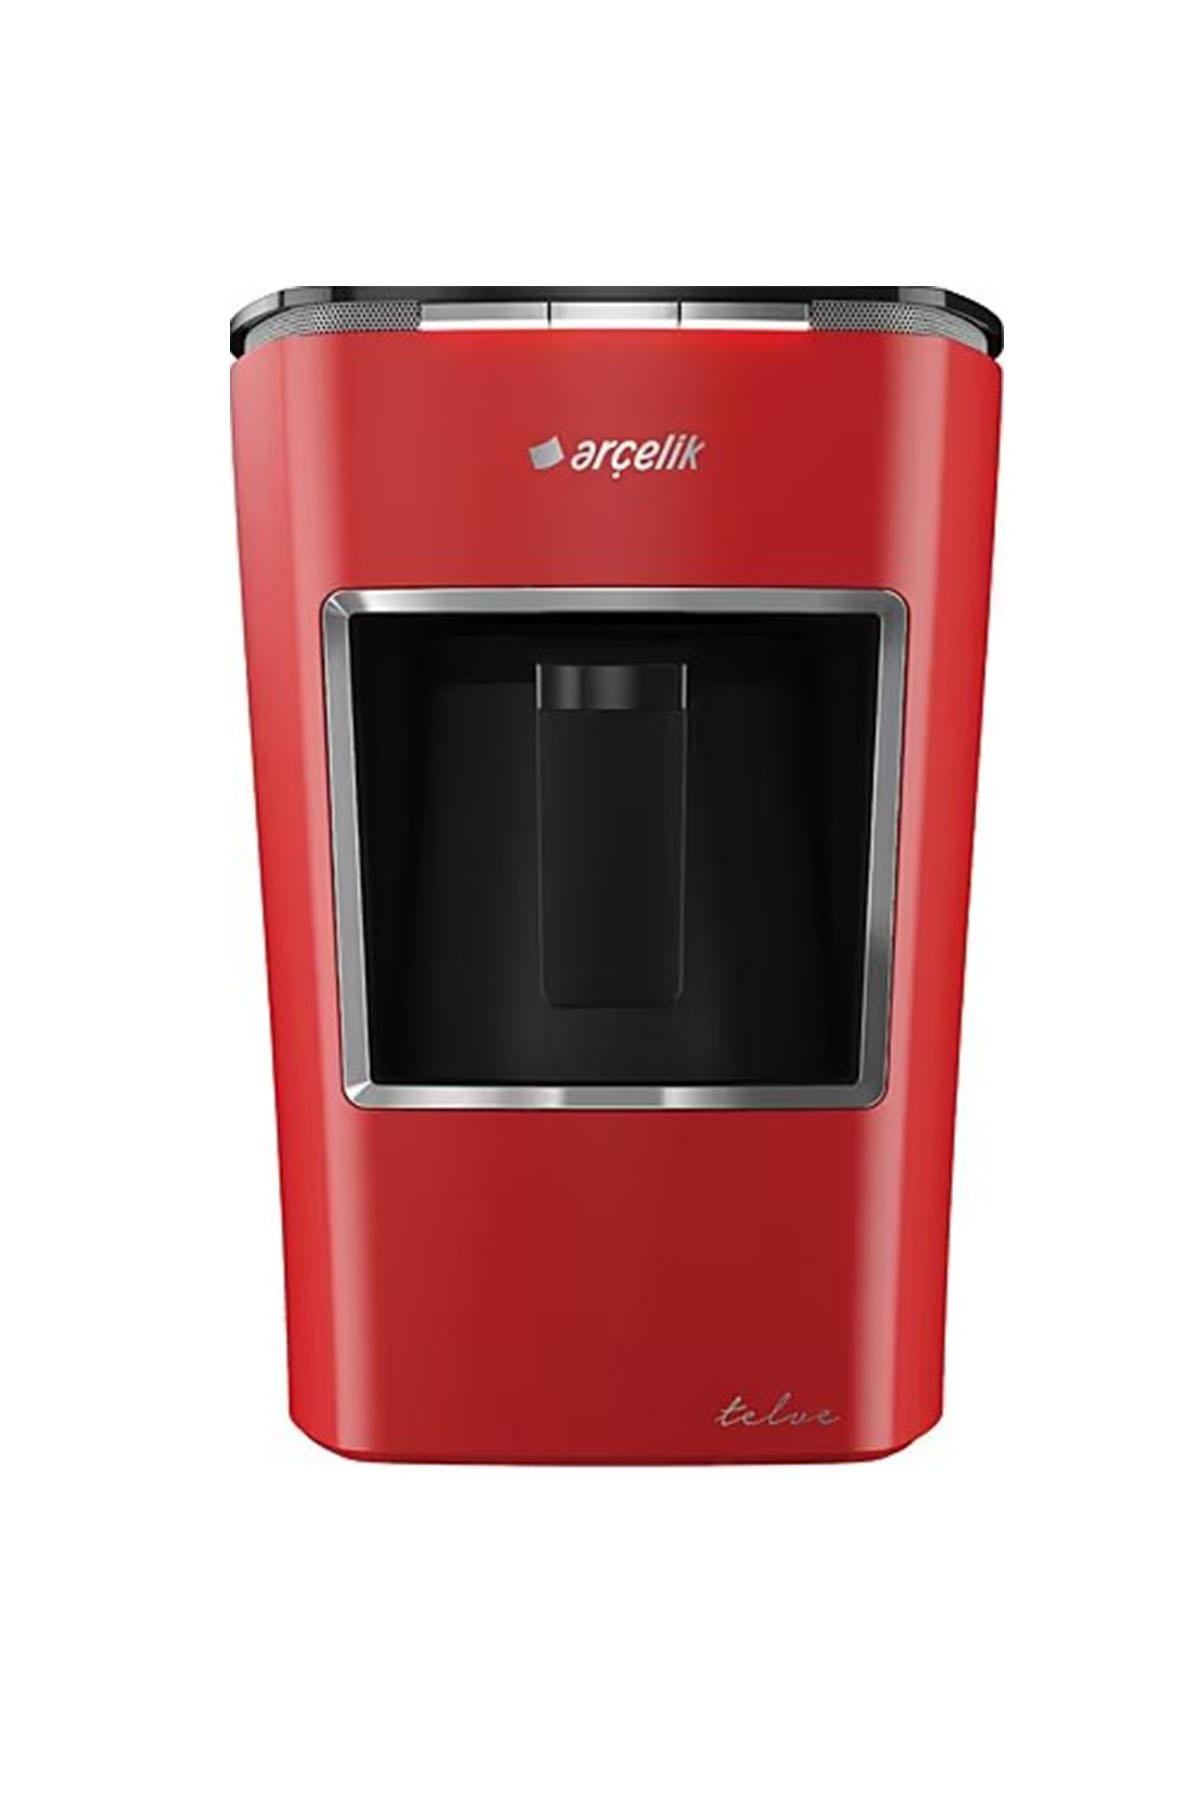 Arçelik K 3400 Telve Kırmızı Türk Kahve Makinesi